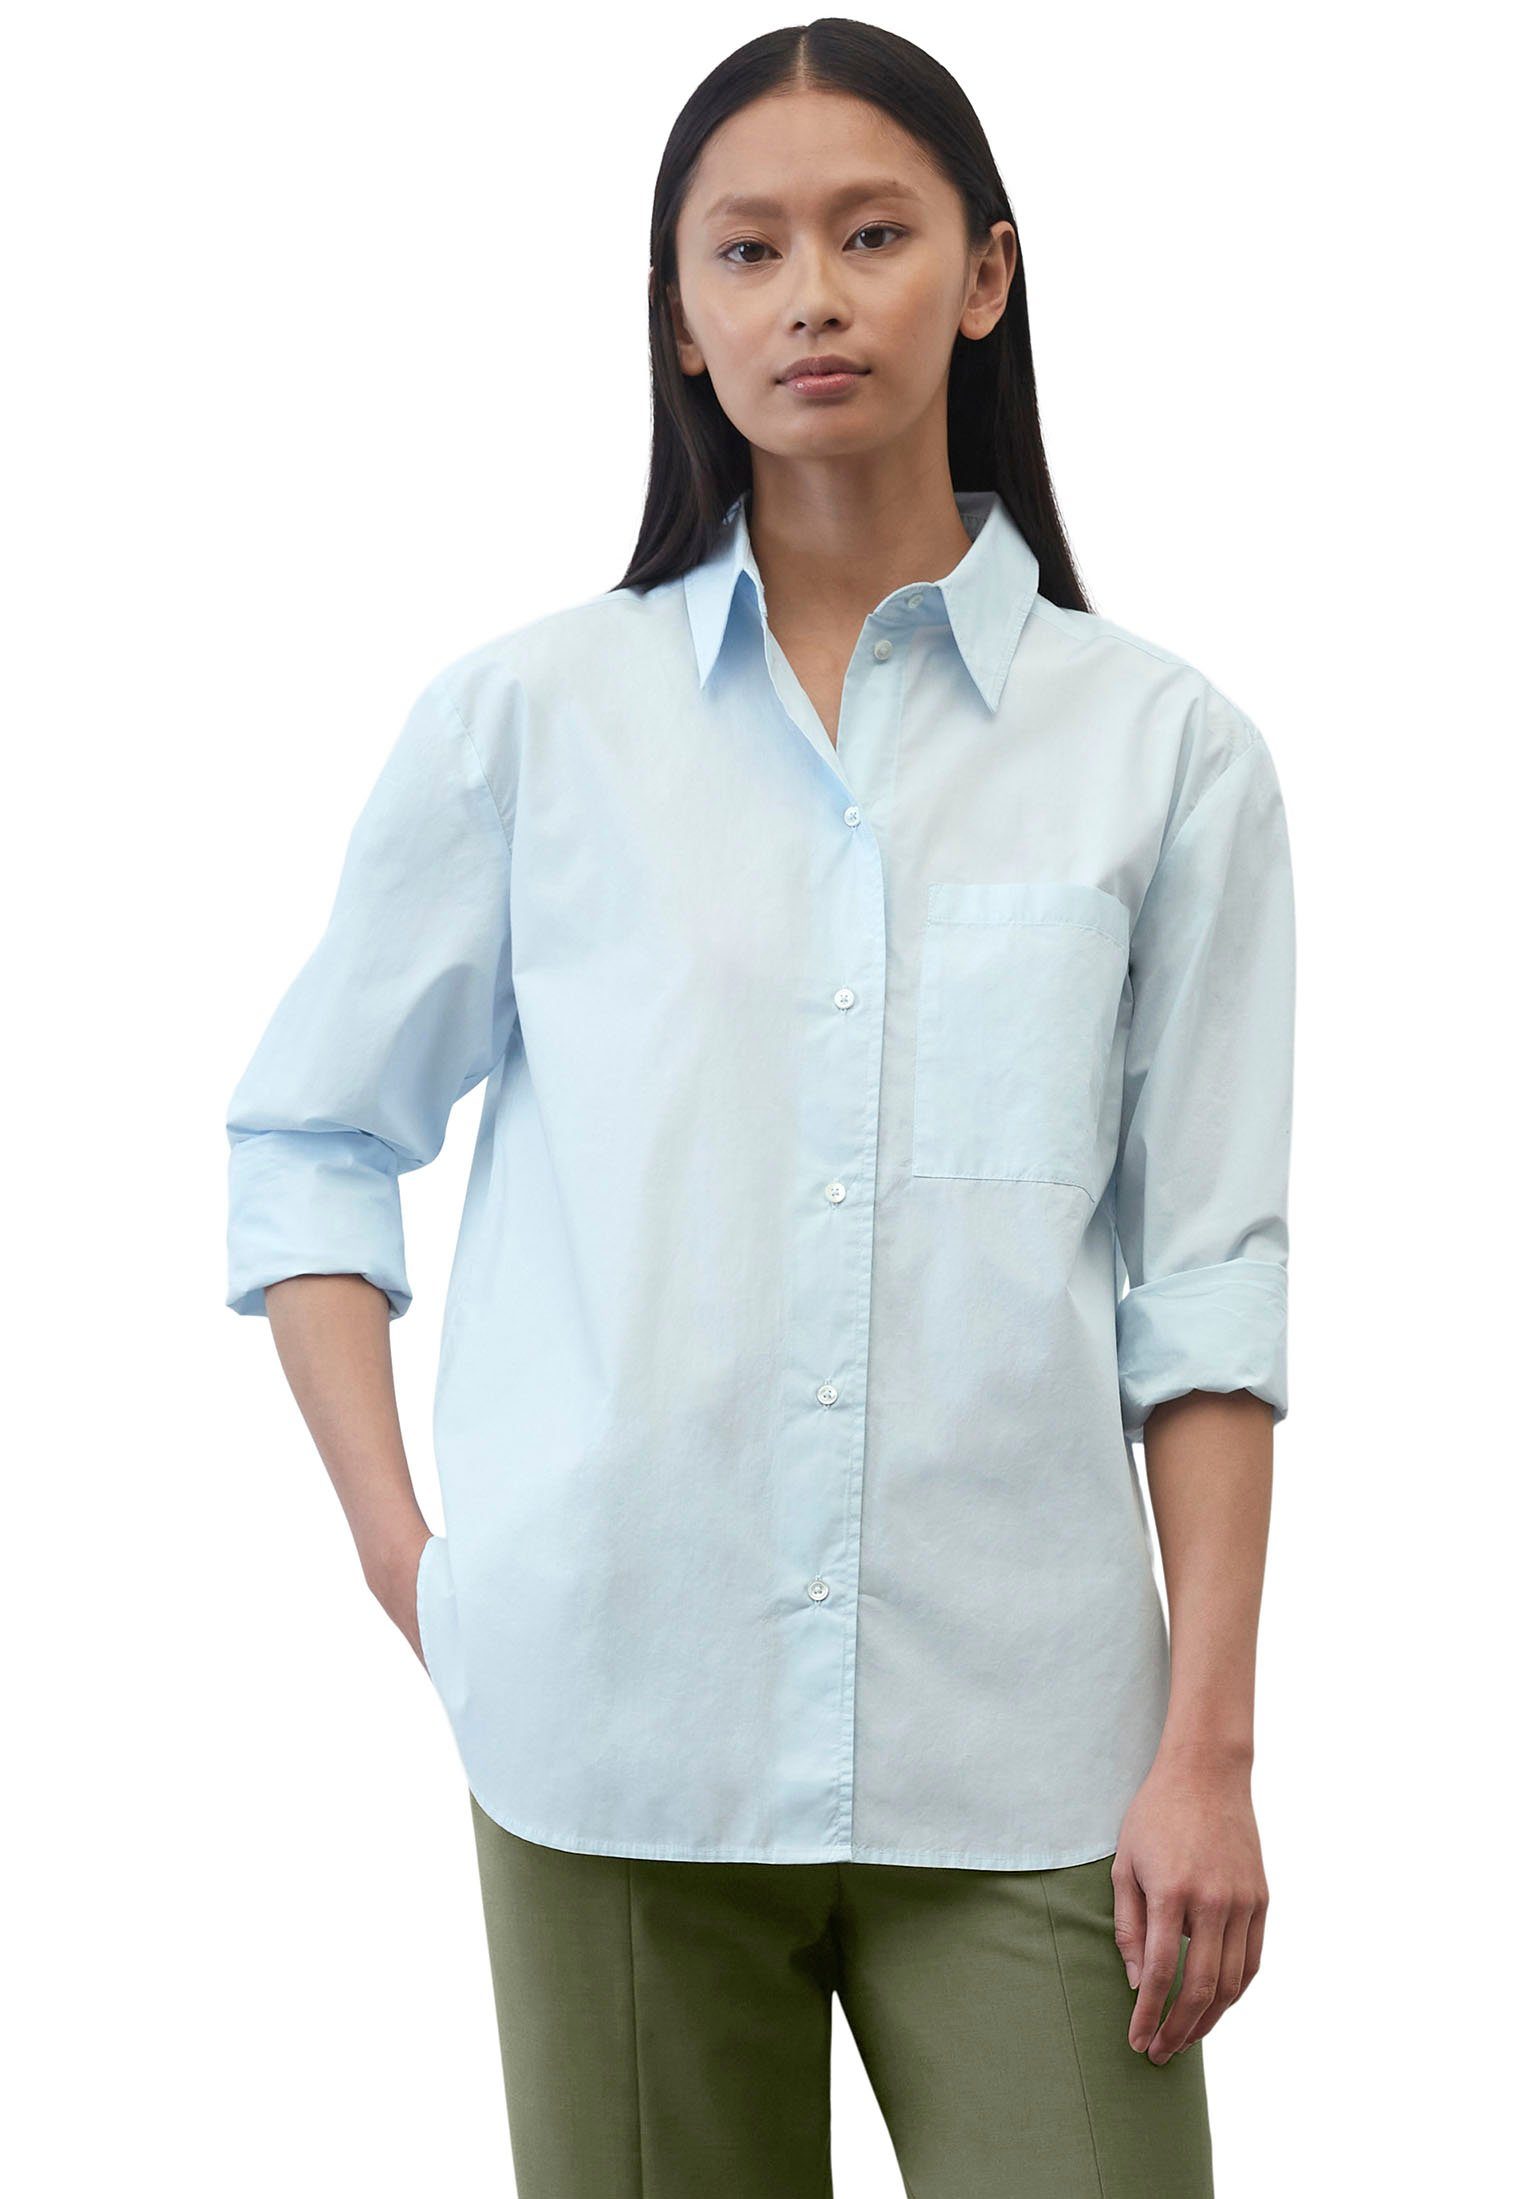 Marc O'Polo Hemdbluse Blouse, long sleeve, kent collar, patched pocket, solid mit einer aufgesetzten Brusttasche hellblau